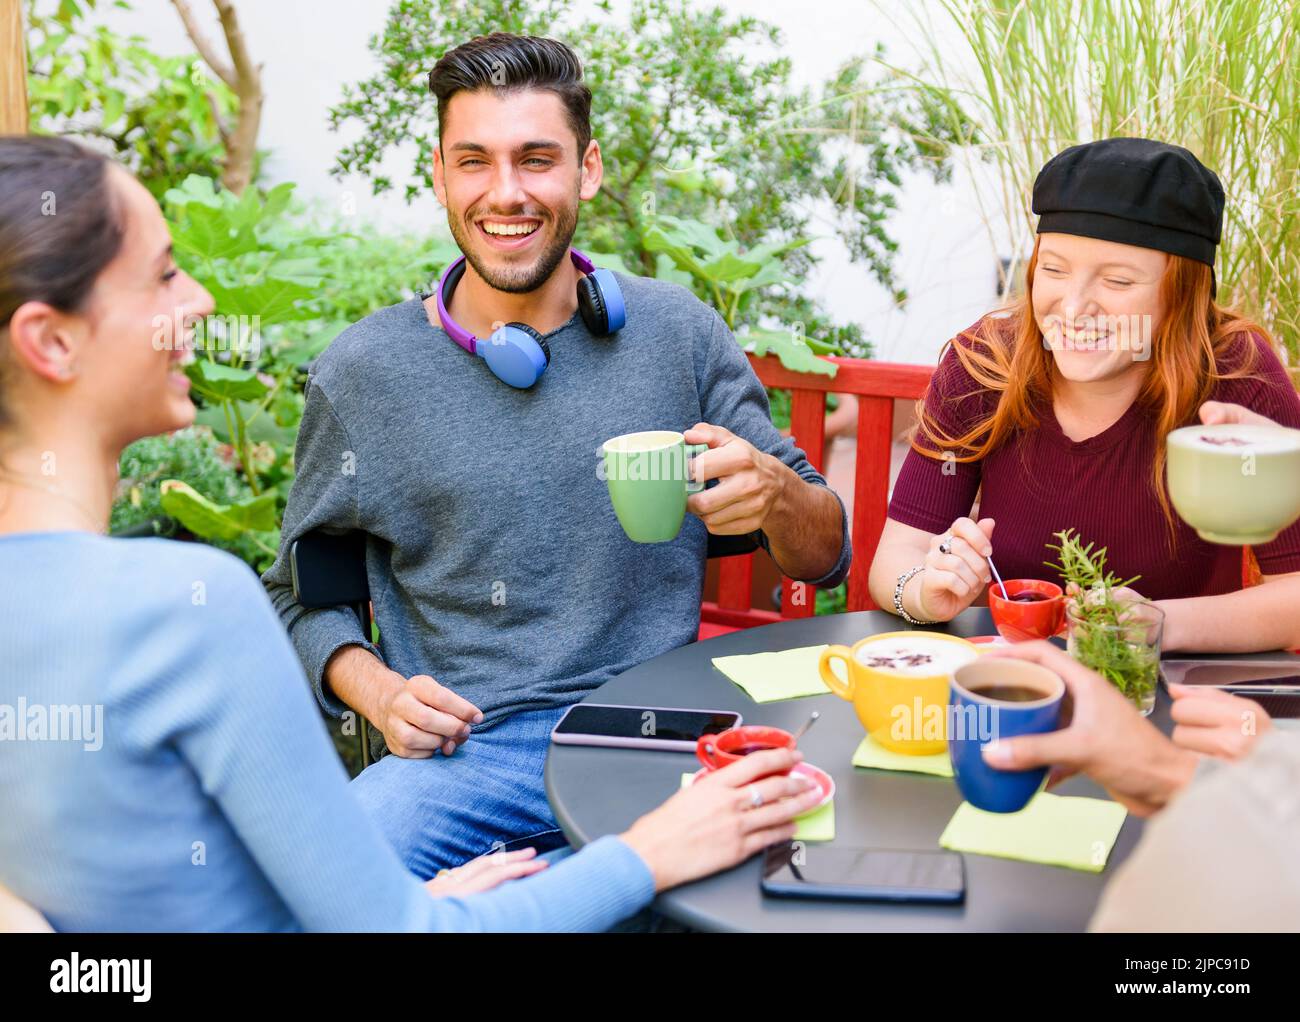 Angolo alto di giovani uomini e donne allegri che bevono caffè e ridono di scherzo mentre si siedono intorno al tavolo durante la pausa caffè in giardino Foto Stock